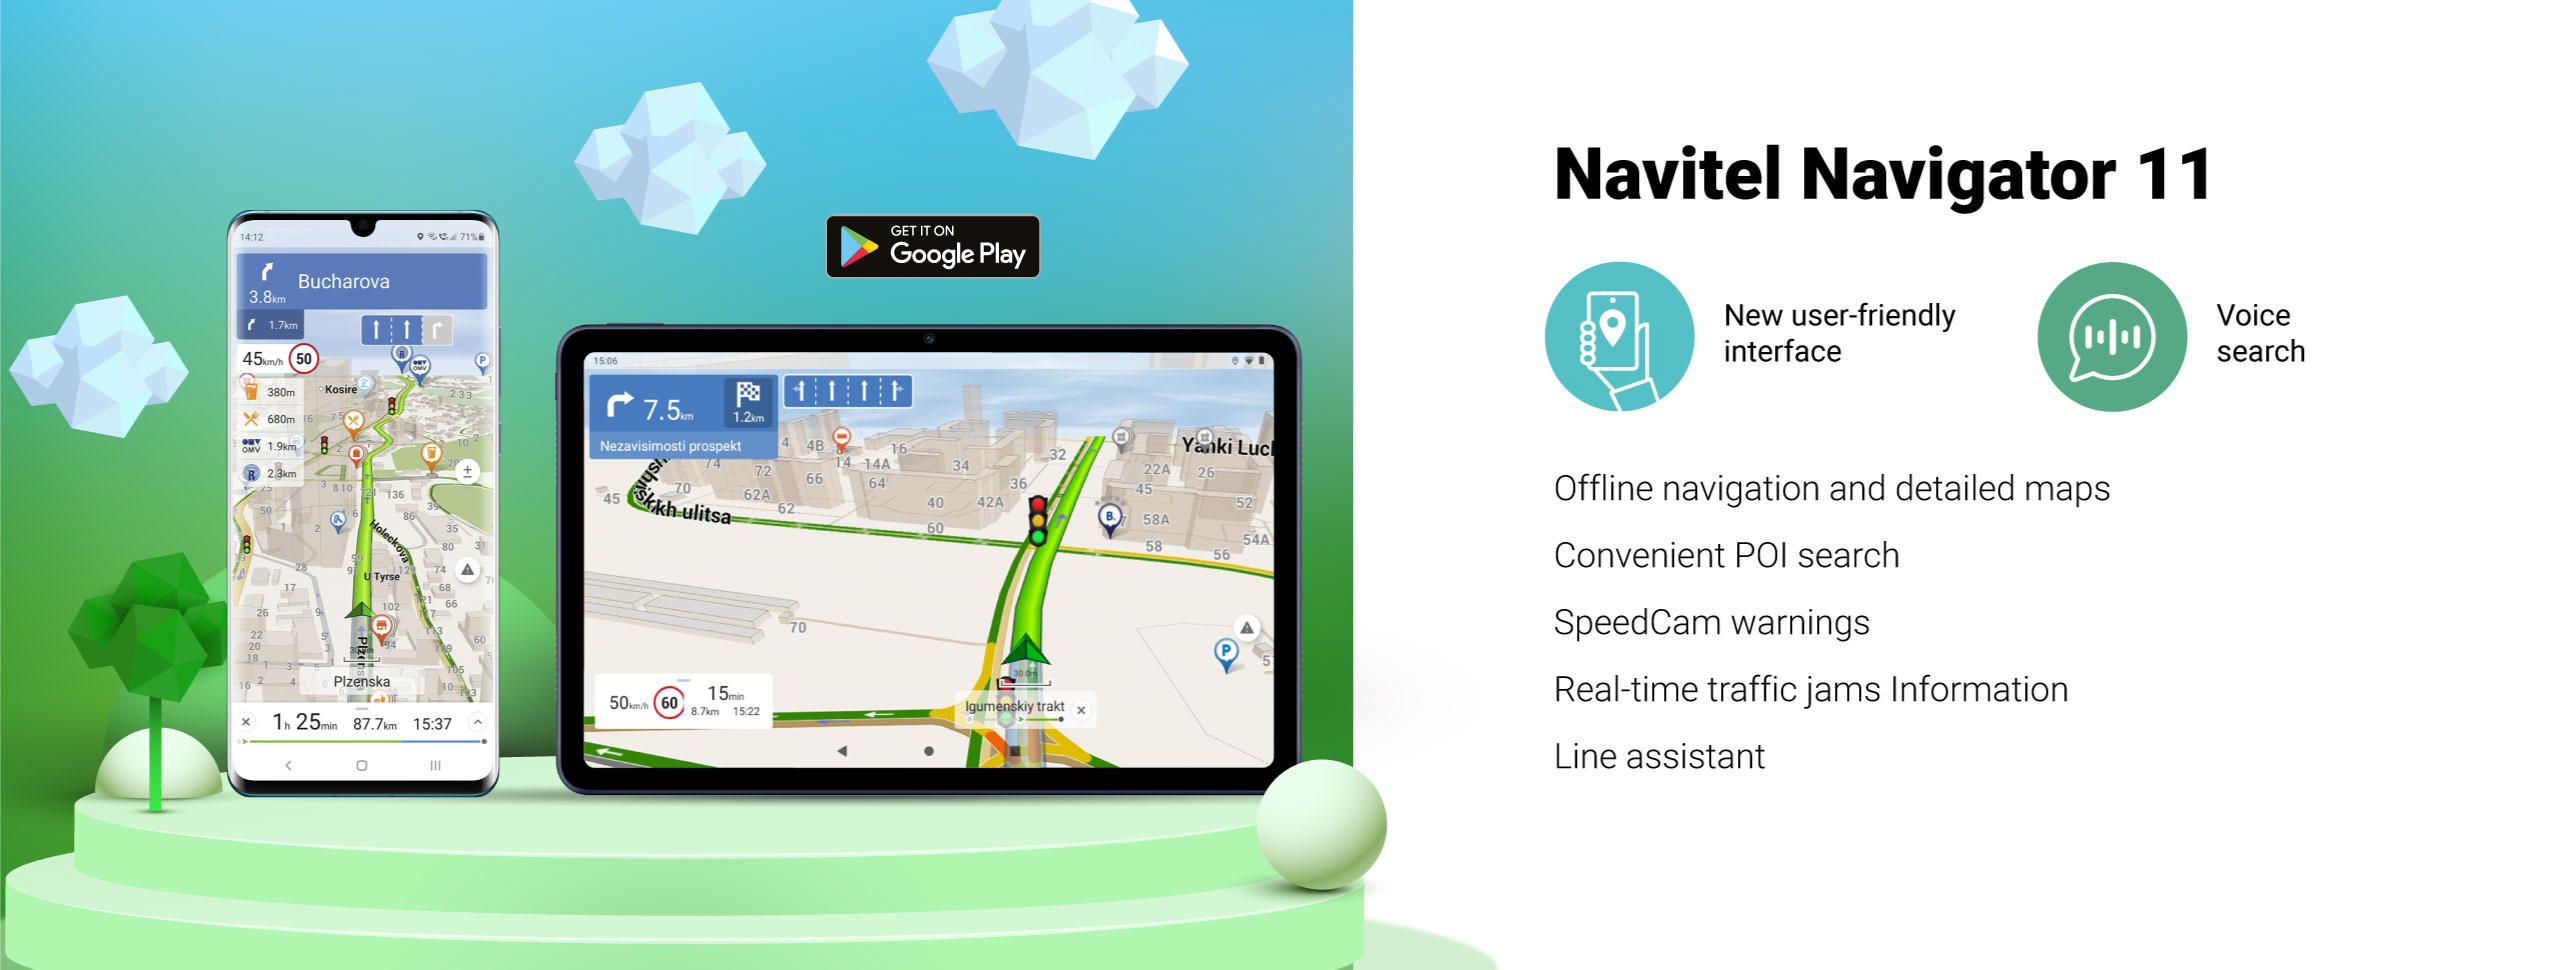 Navitel Navigator 11 for Android